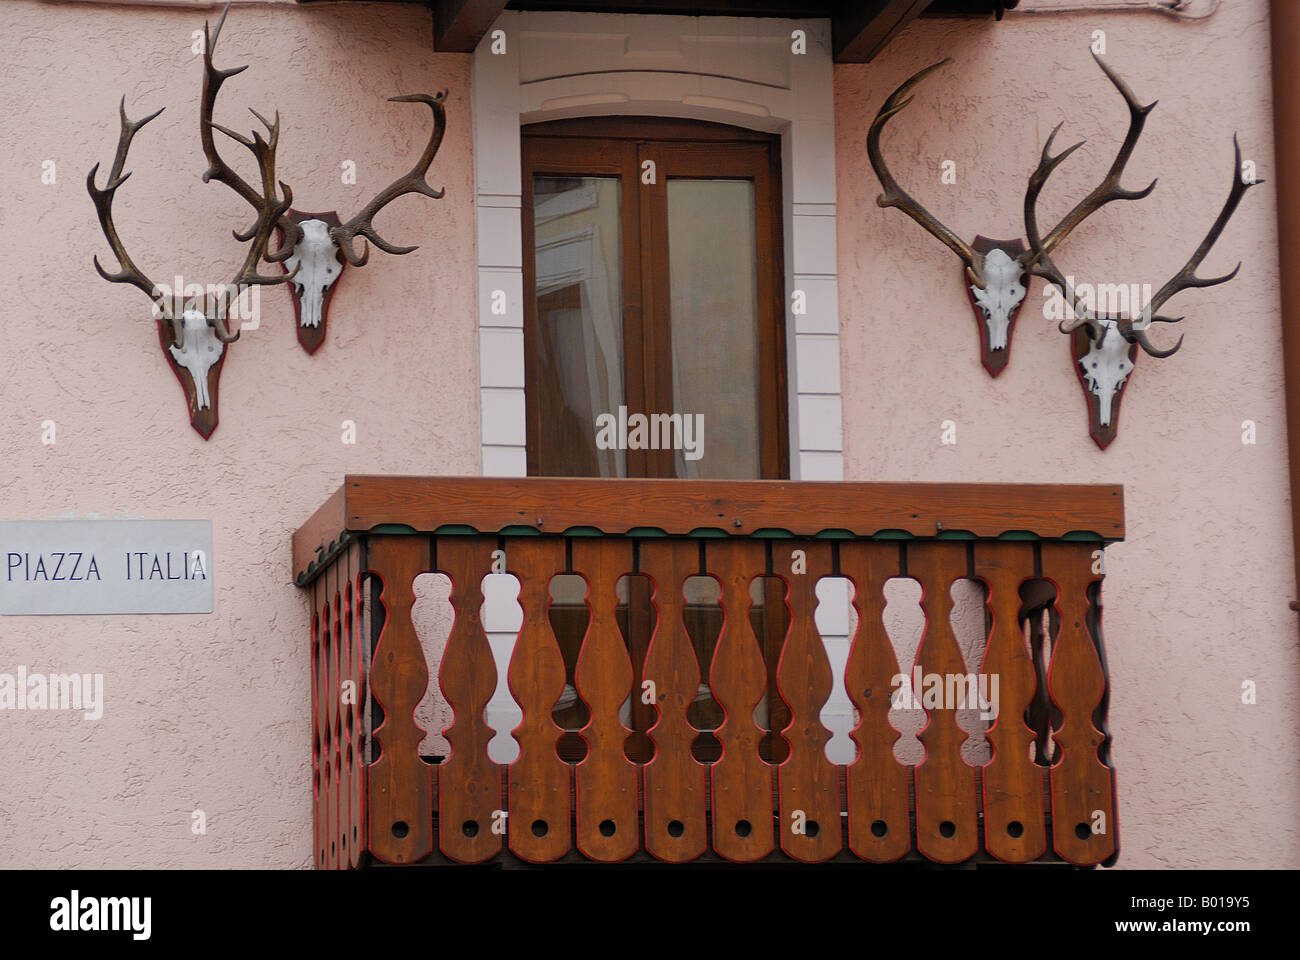 Gallio,un petit village sur les montagnes (Prealpi Venete,plateau d'Asiago).Un balcon décoré de nombreuses cornes de cerf Banque D'Images